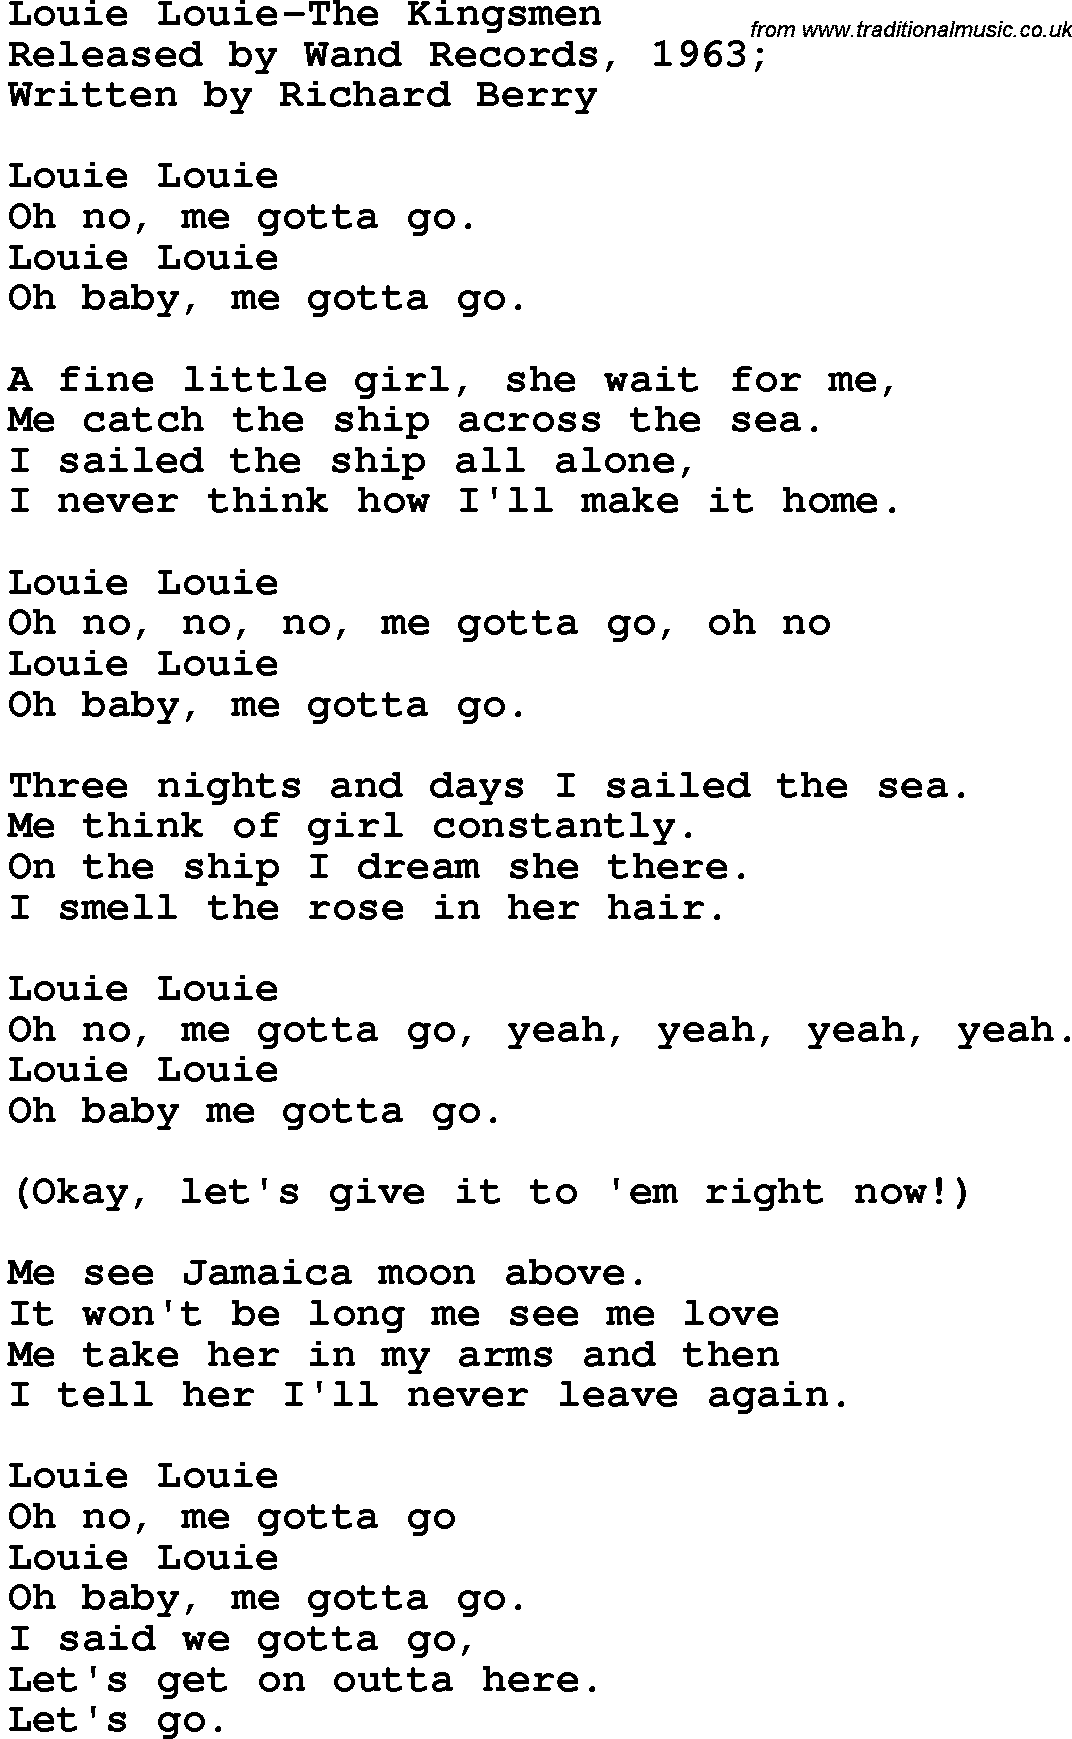 Novelty song: Louie Louie-The Kingsmen lyrics